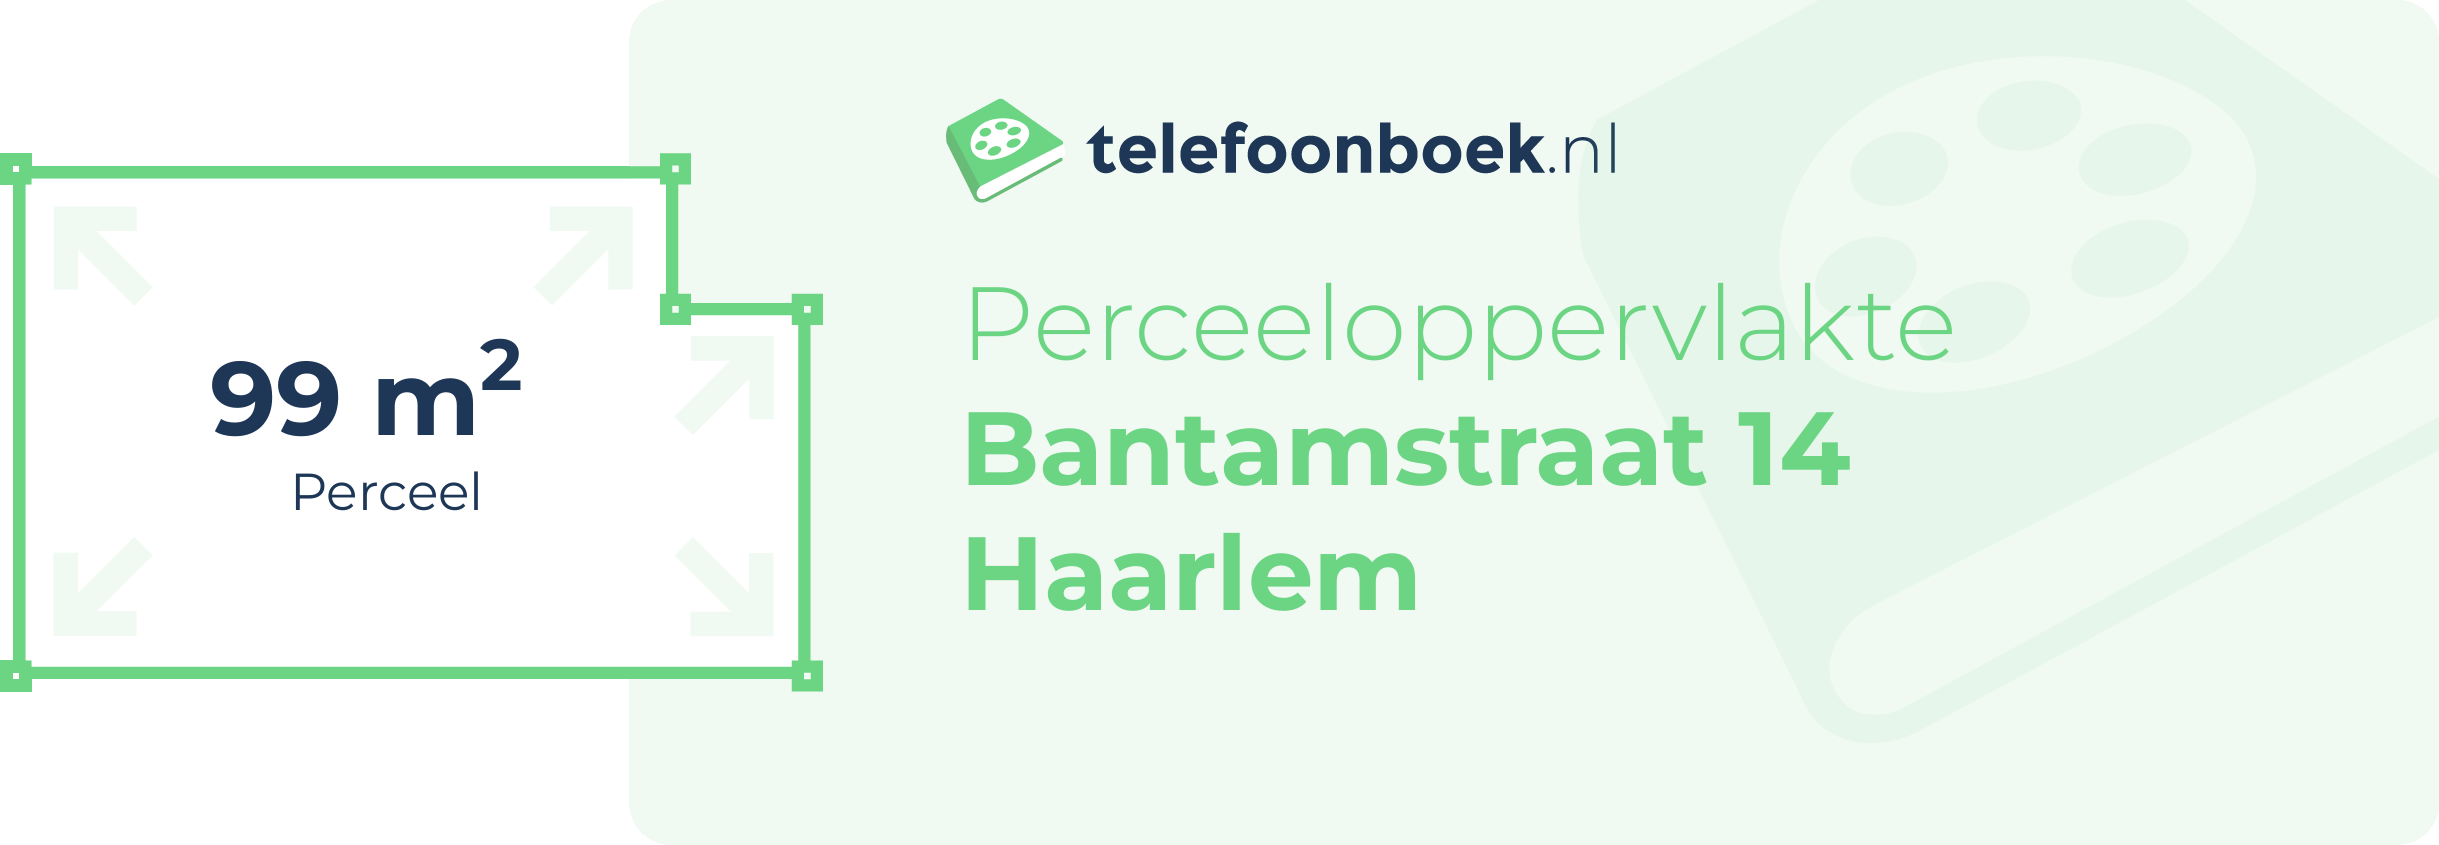 Perceeloppervlakte Bantamstraat 14 Haarlem